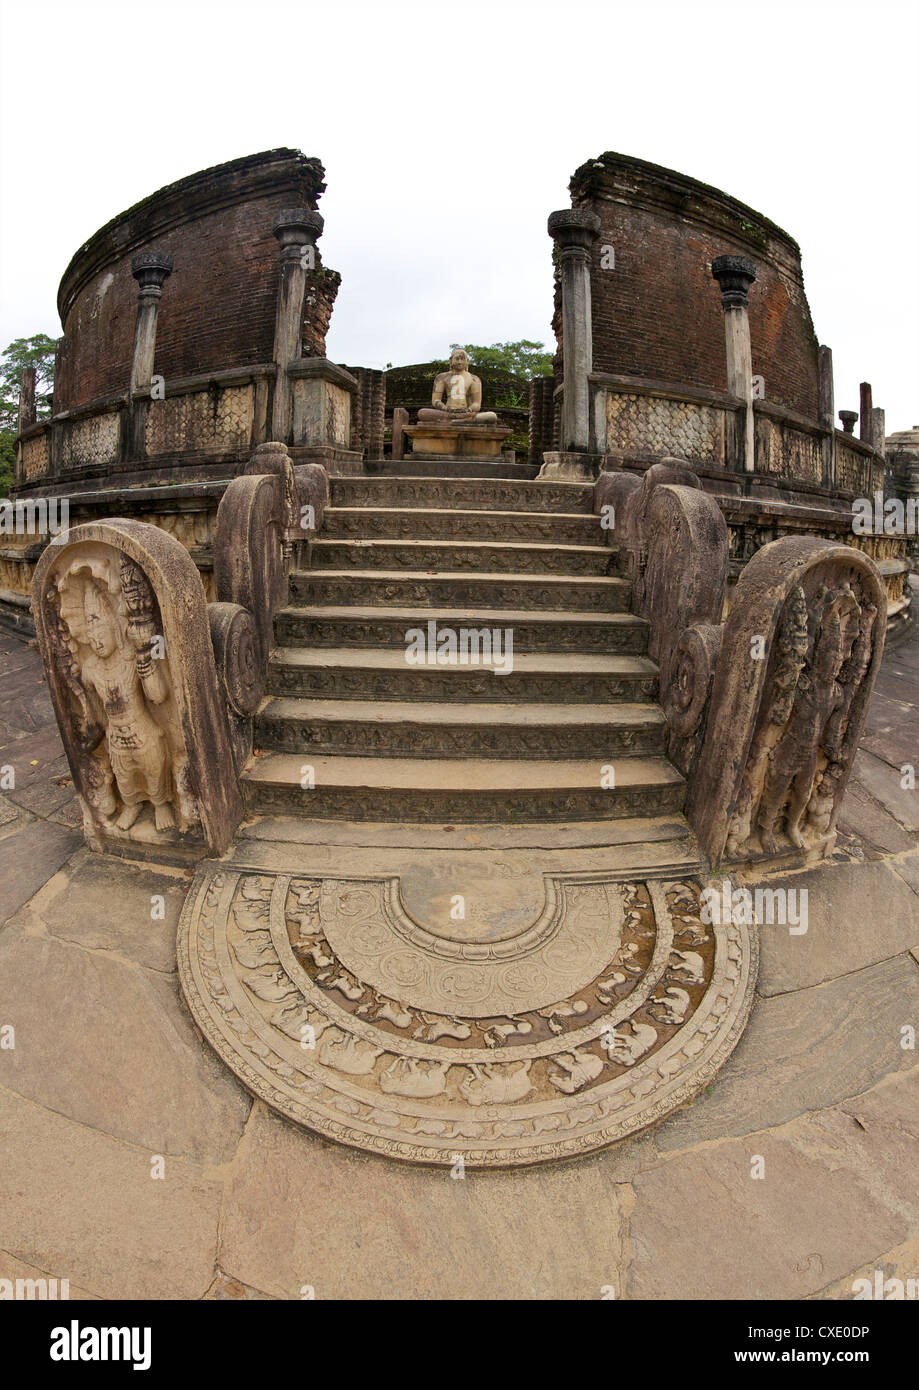 Moonstone y protector de piedras, entrada Vatagade, siglo XII, sitio del Patrimonio Mundial de la UNESCO, Polonnaruwa, Sri Lanka, Asia Foto de stock